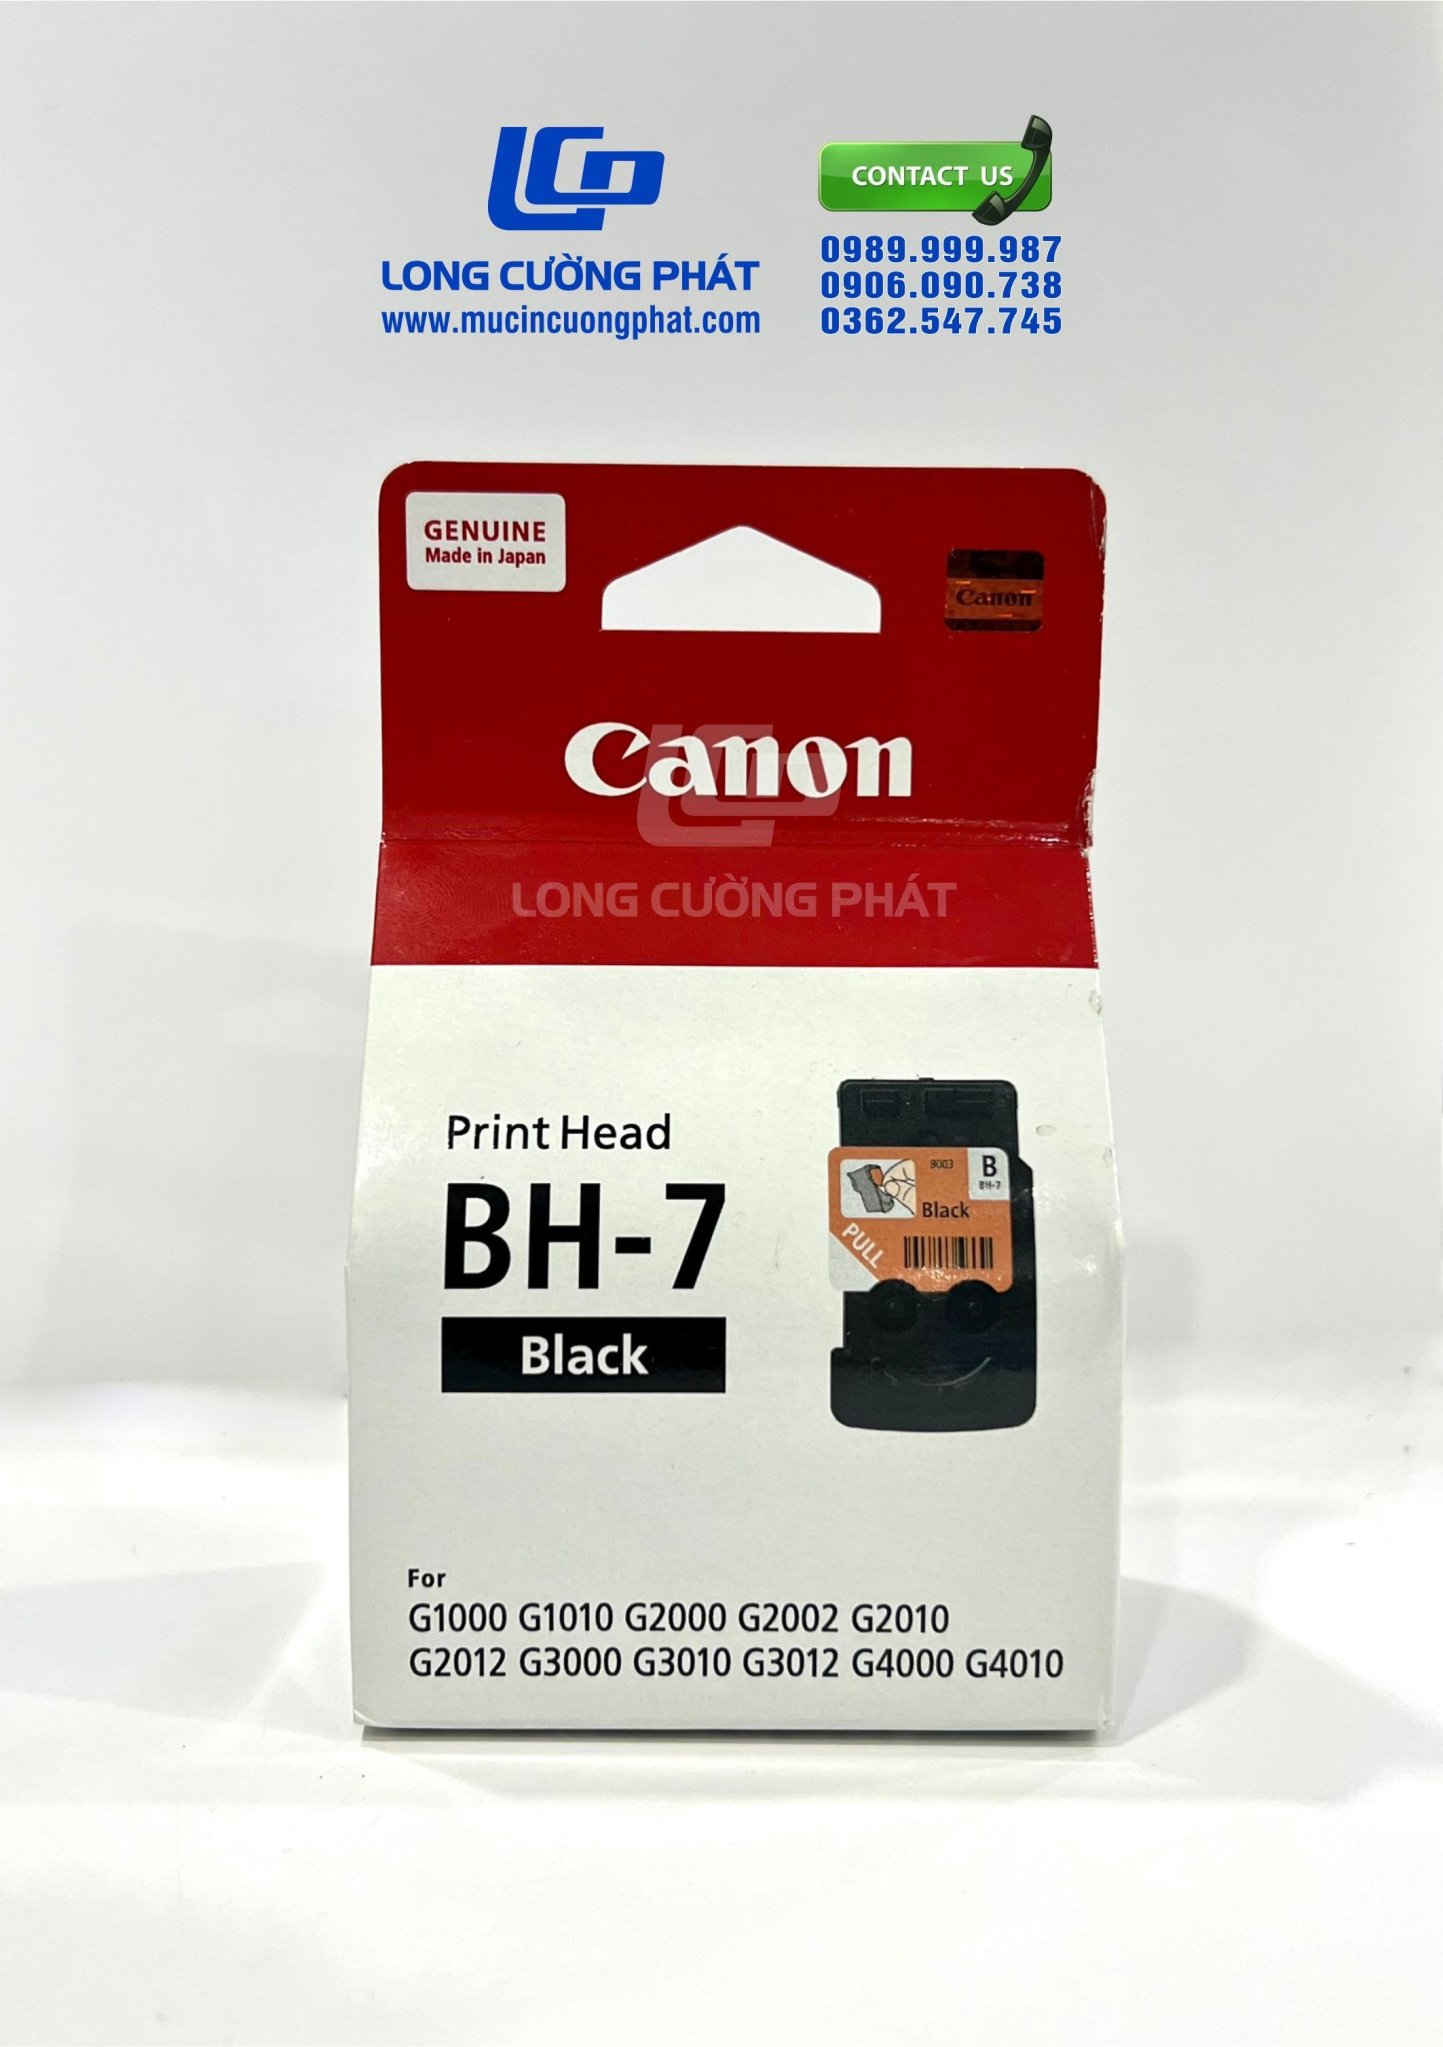 Đầu phun máy in Canon G1010 - G2010 - G3010 - G4010 ( BH-7 )